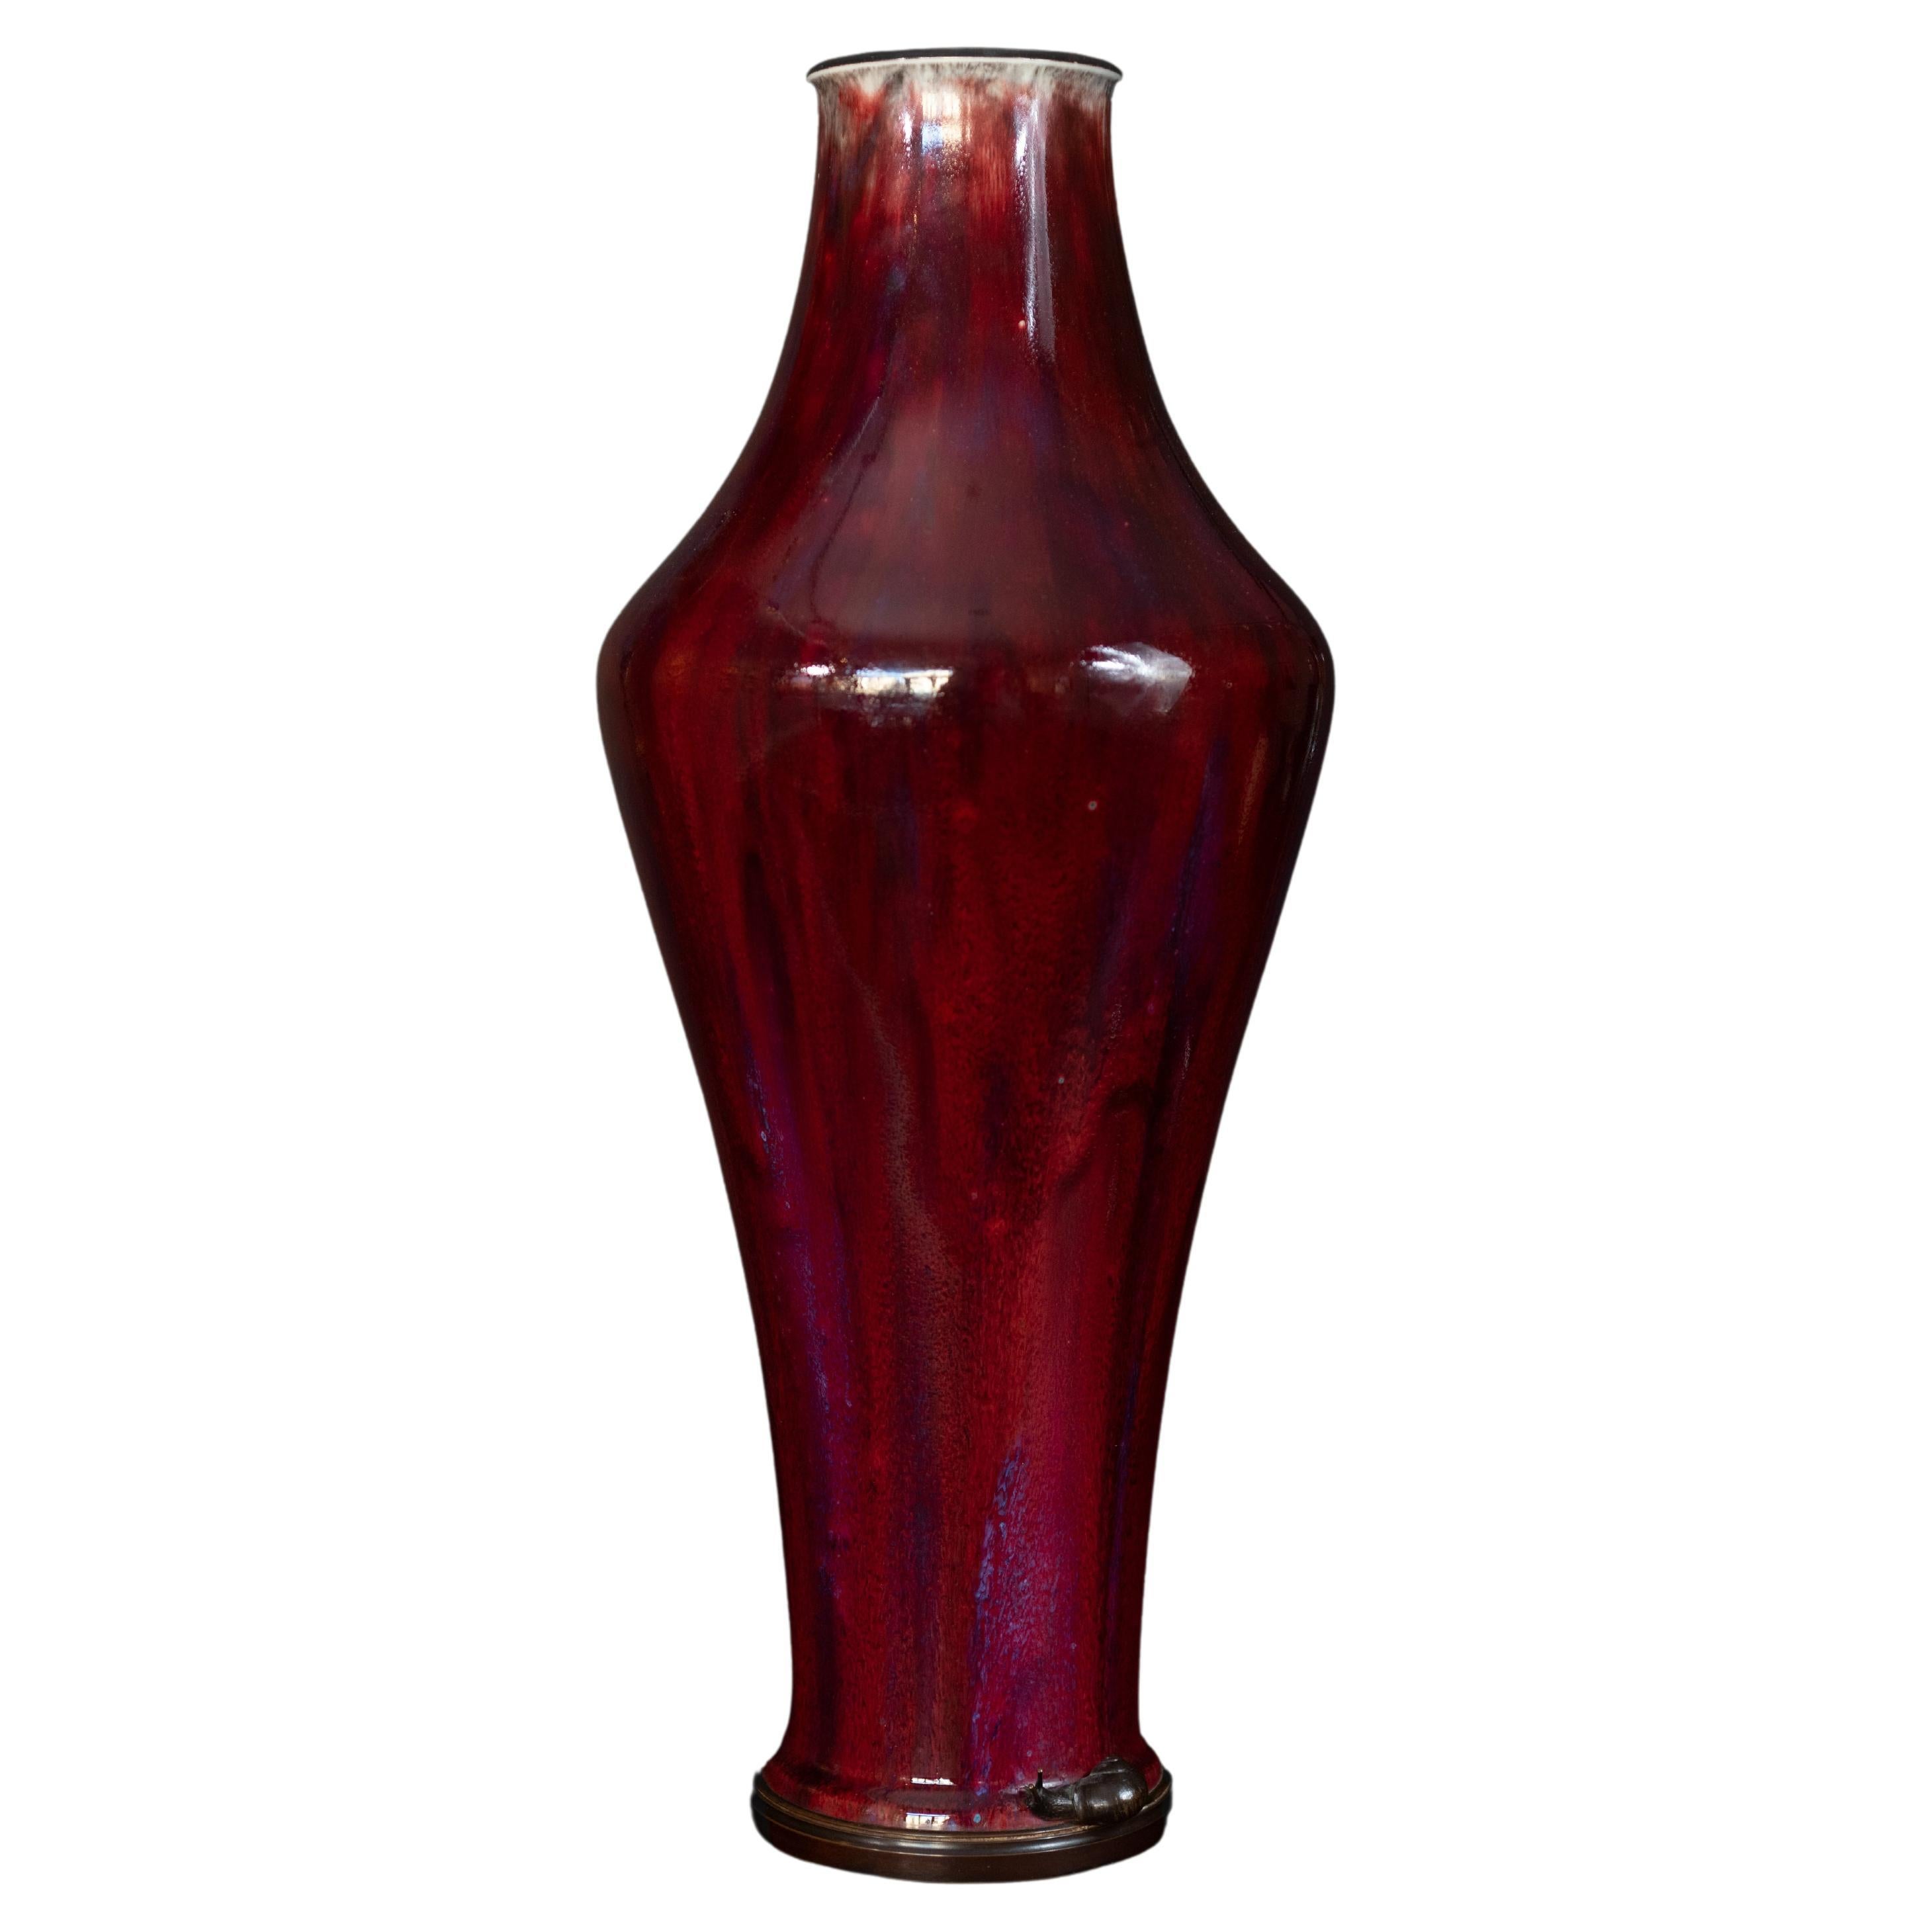 Vase Art Nouveau couleur sang de boeuf avec monture en bronze en forme d'escargot par la Manufacture Nationale de Sèvres